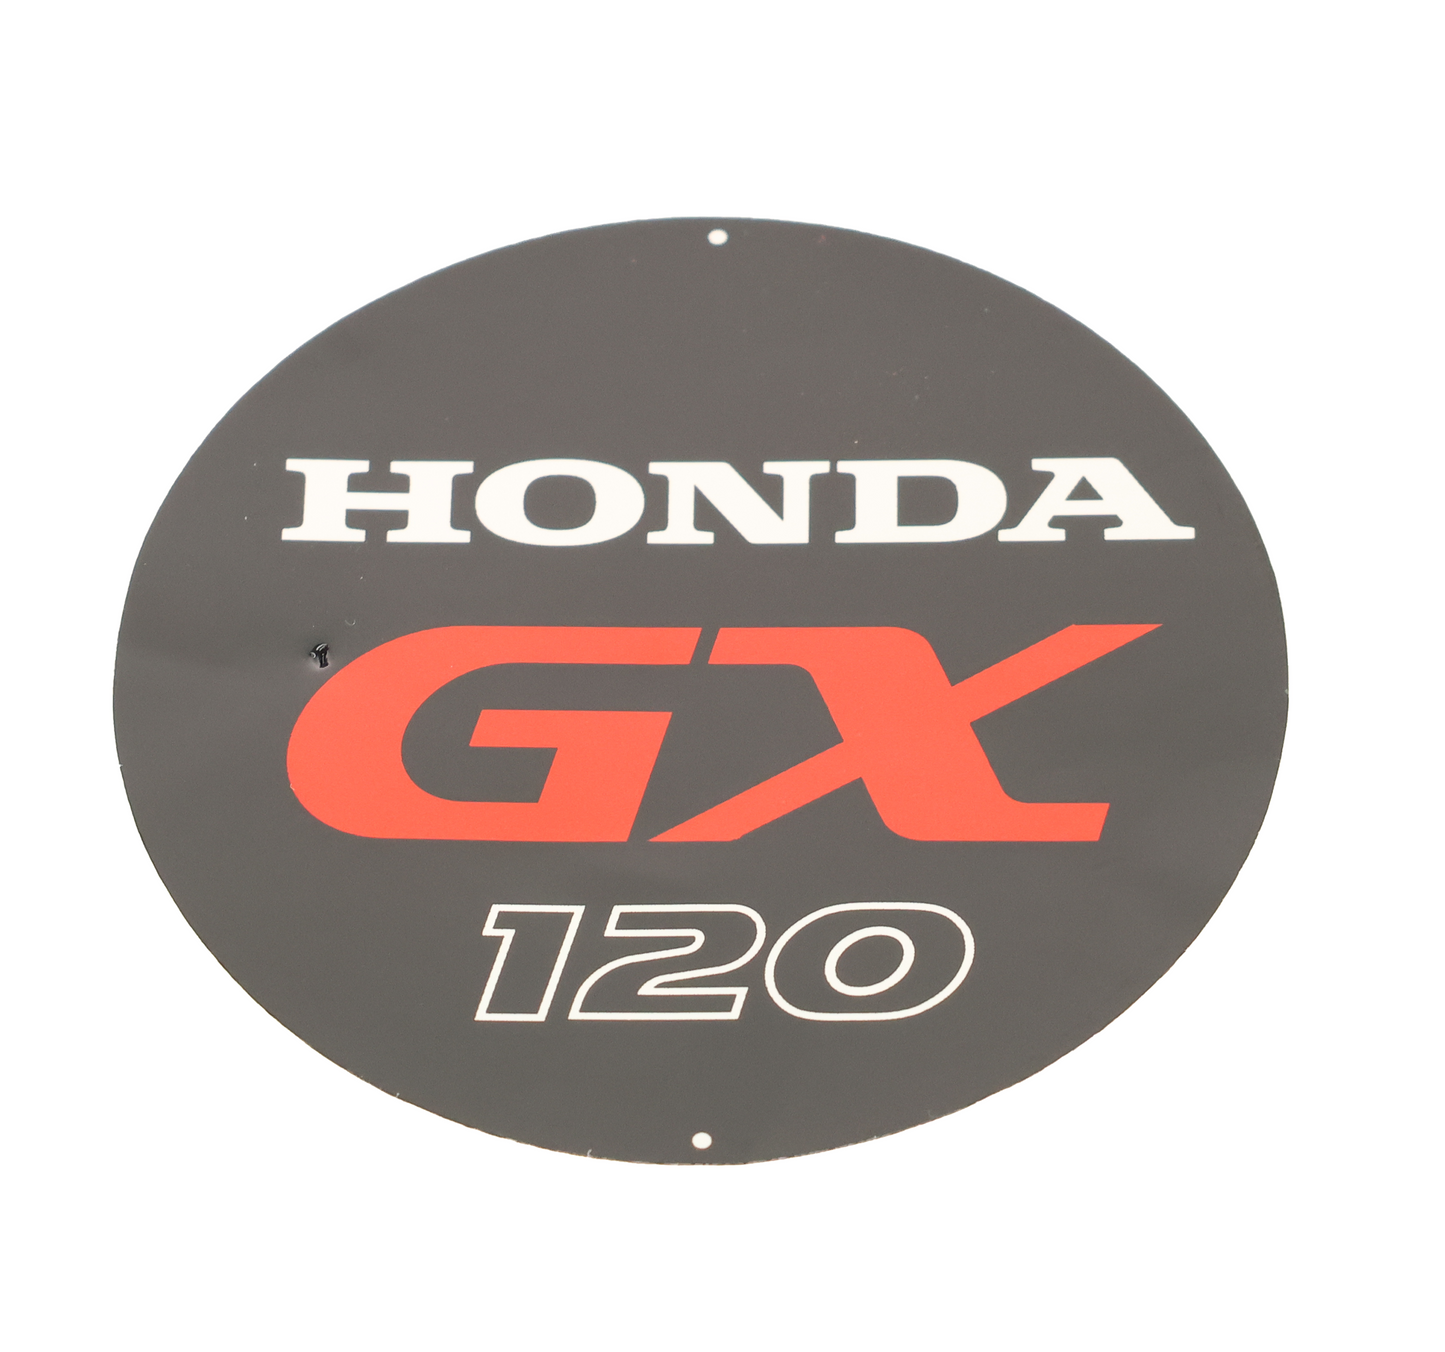 Honda Original Equipment Emblem (GX120) - 87521-Z4H-000